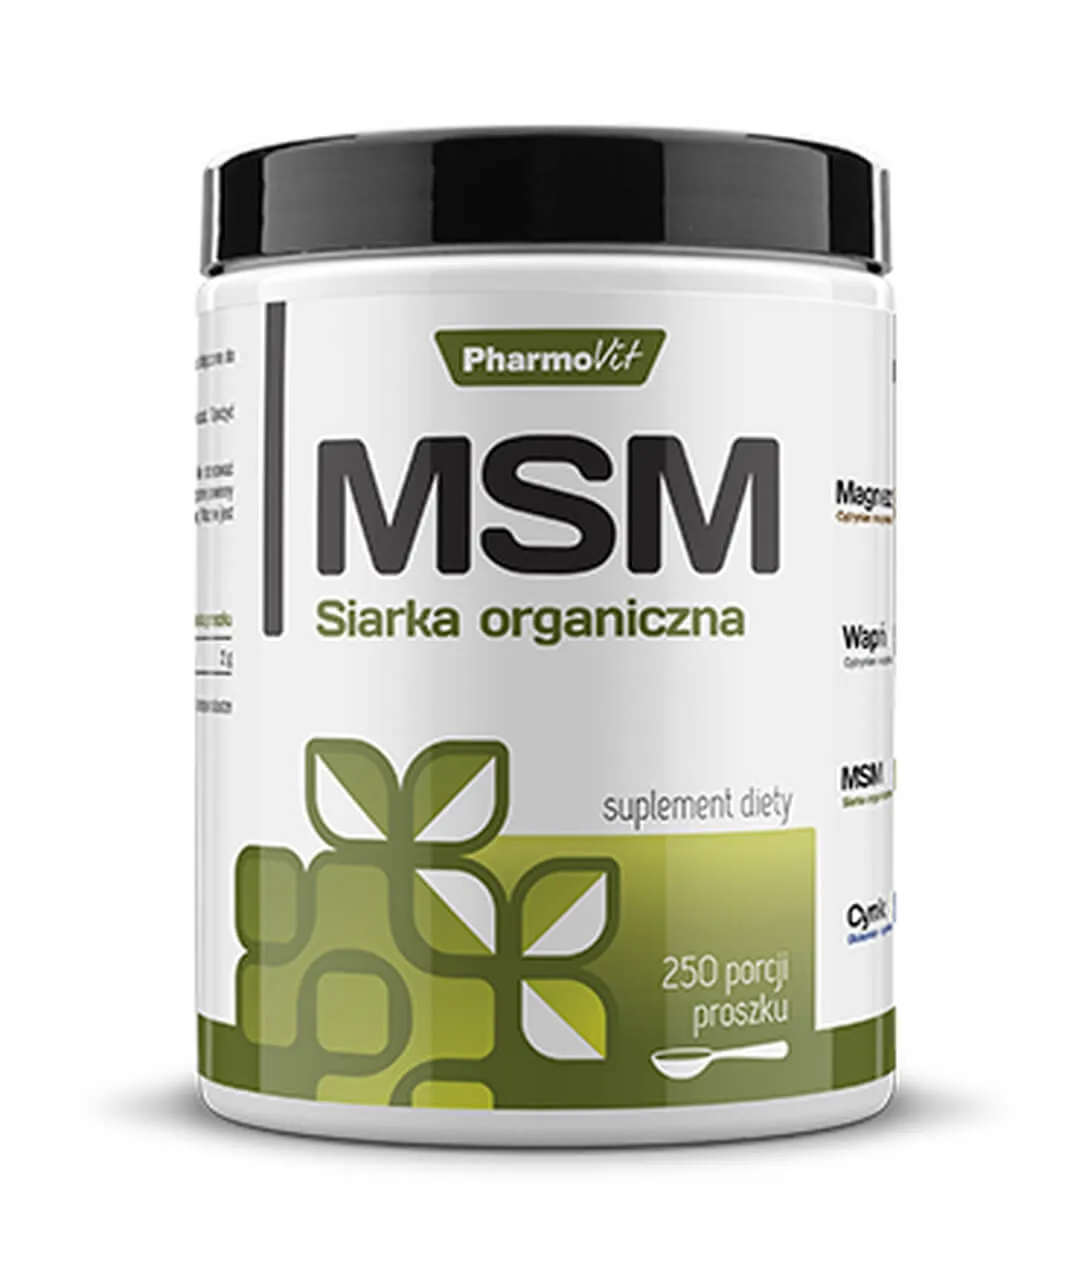 MSM Siarka Organiczna Pharmovit, suplement diety, 500g